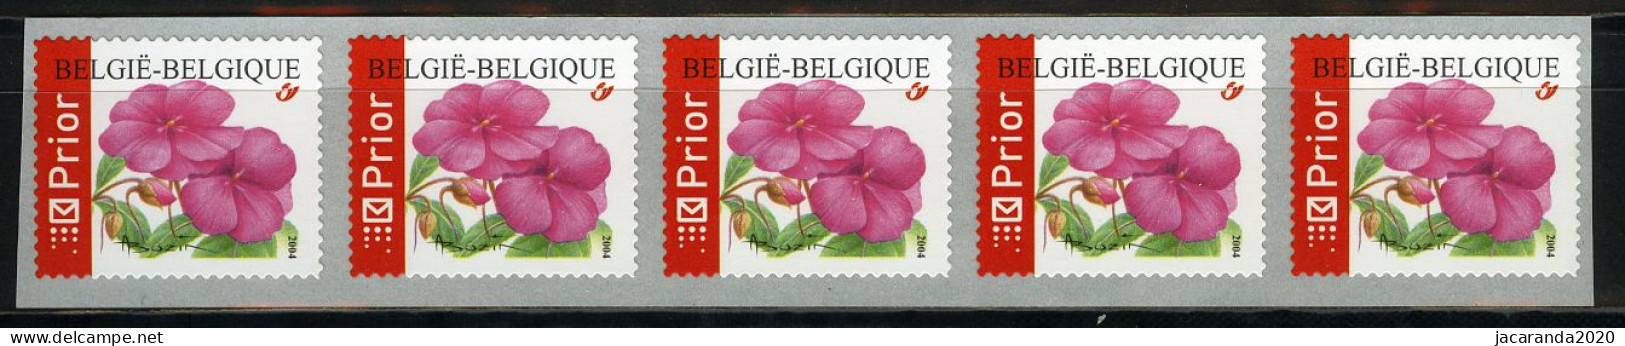 België R110 - Bloemen - Buzin (3347) - Impatiens - Vlijtig Liesje - 2004 - Strook Van 5 - Bande De 5  - Rouleaux